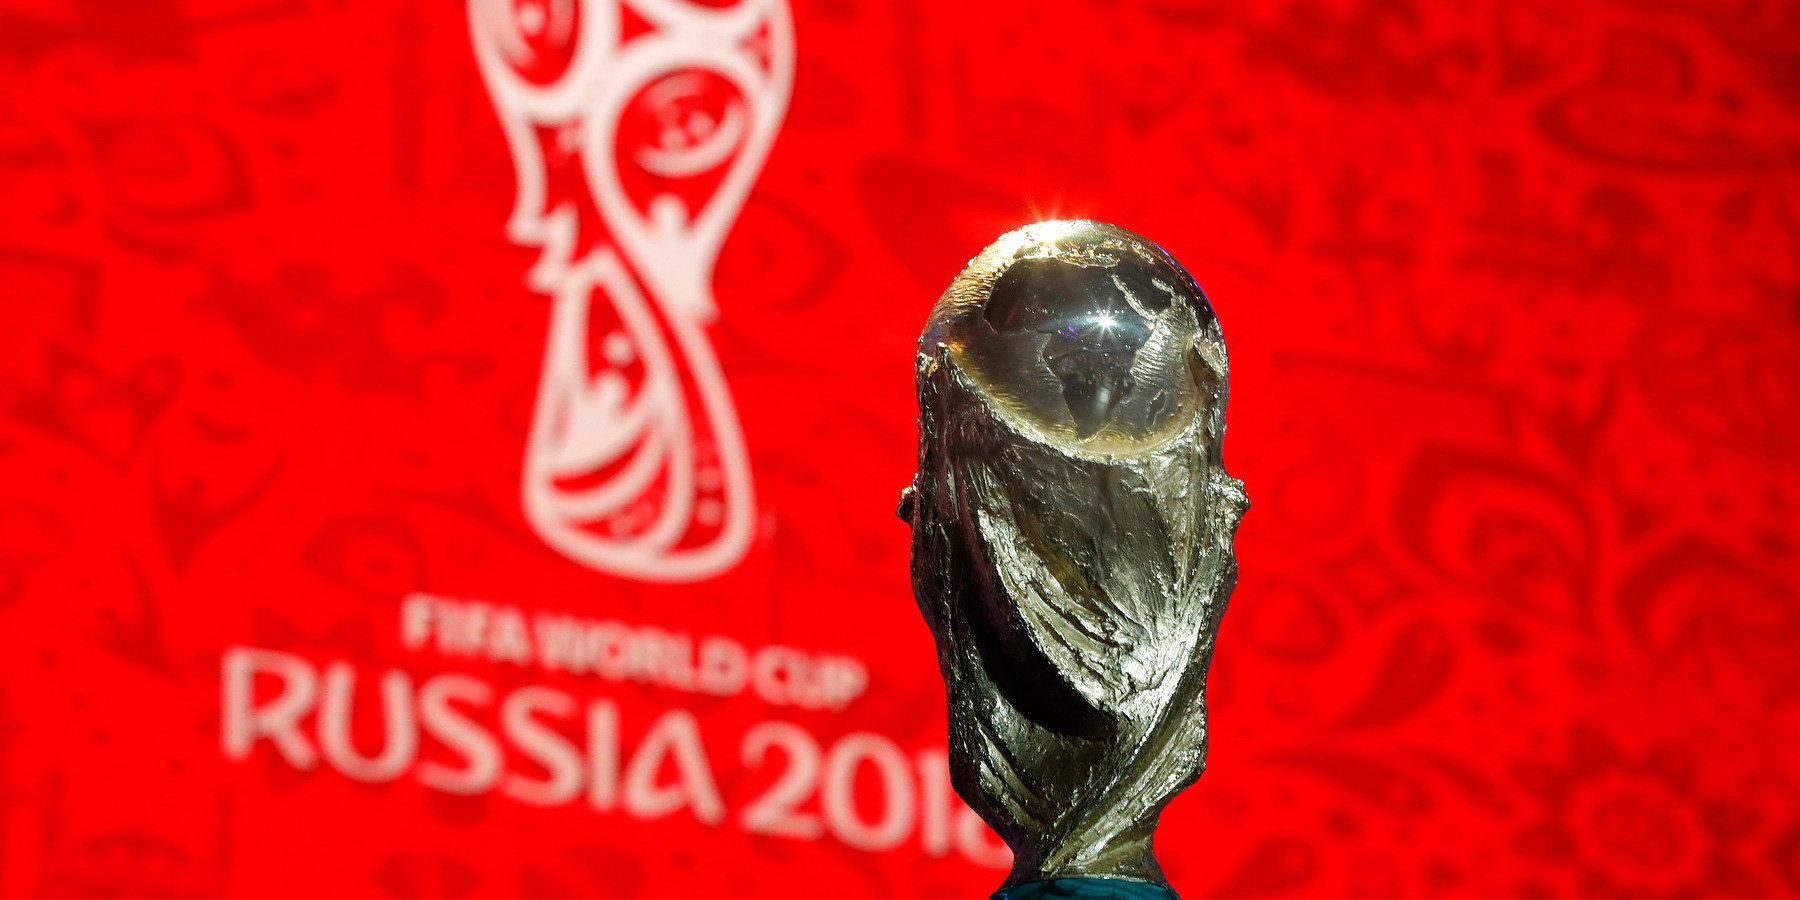 Испания – Португалия: прогноз букмекеров - Чемпионата мира 2018